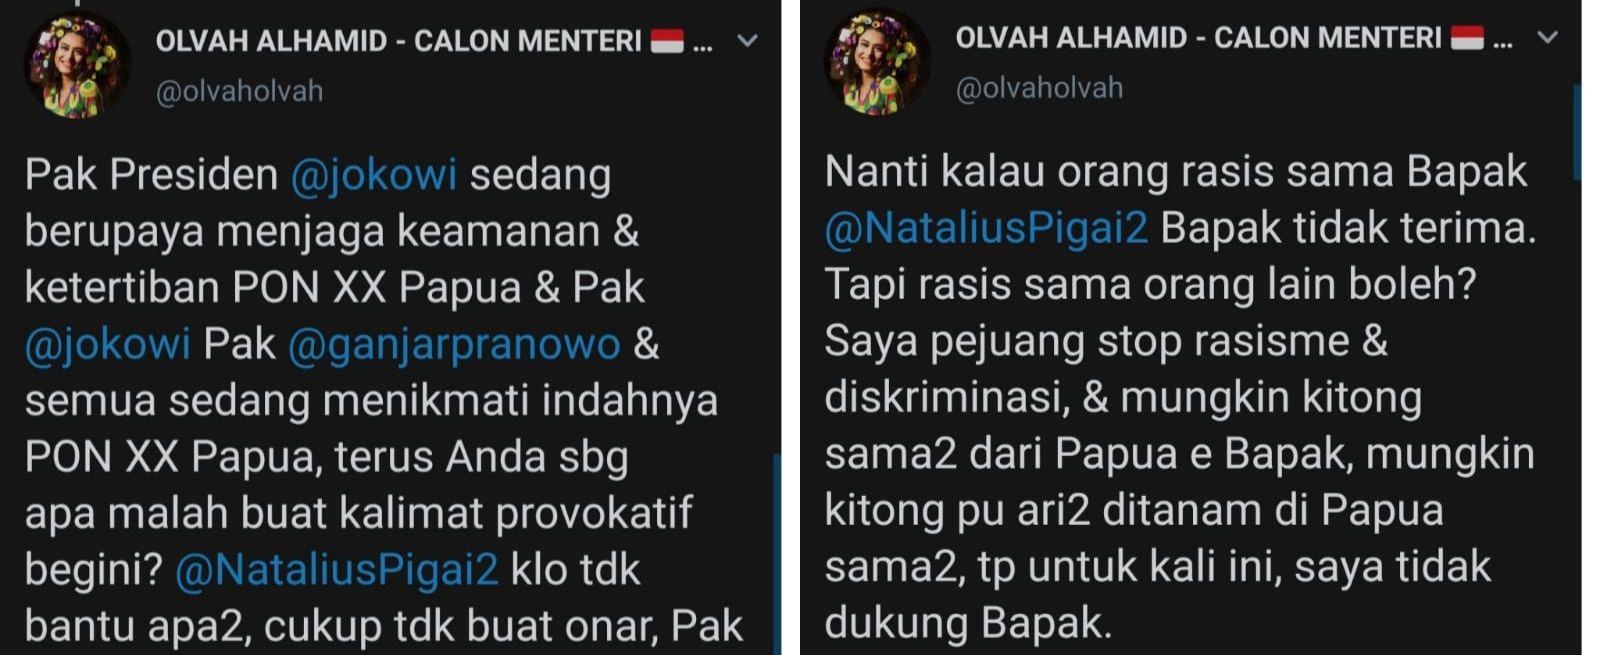 Cuitan Olvah Alhamid tentang dugaan rasis yang dilakukan Natalius Pigai pada Jokowi dan Ganjar Pranowo